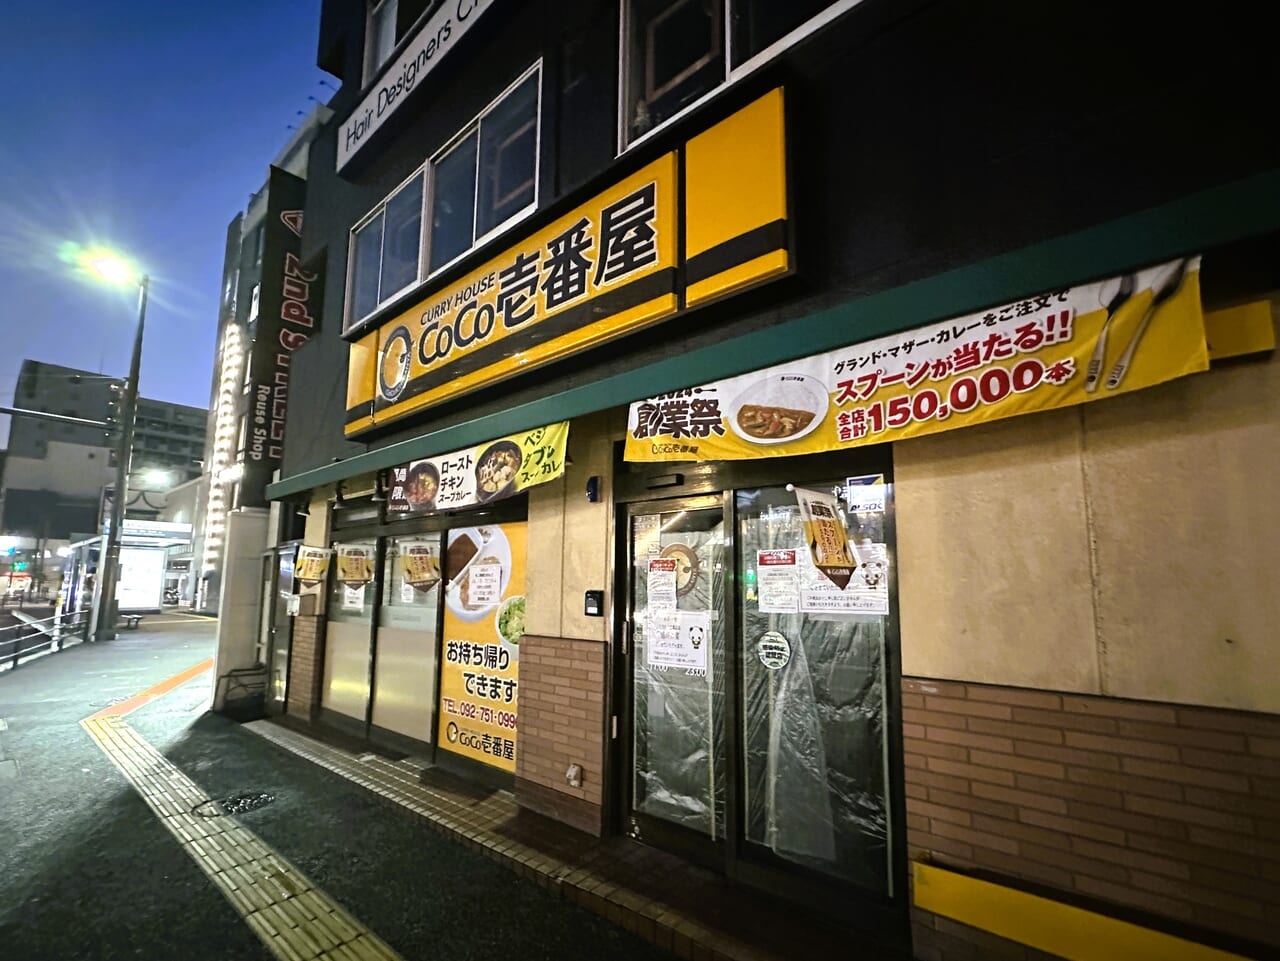 『 CoCo壱番屋 中央区六本松店 』の電気が消えています！店頭には貼紙が…。